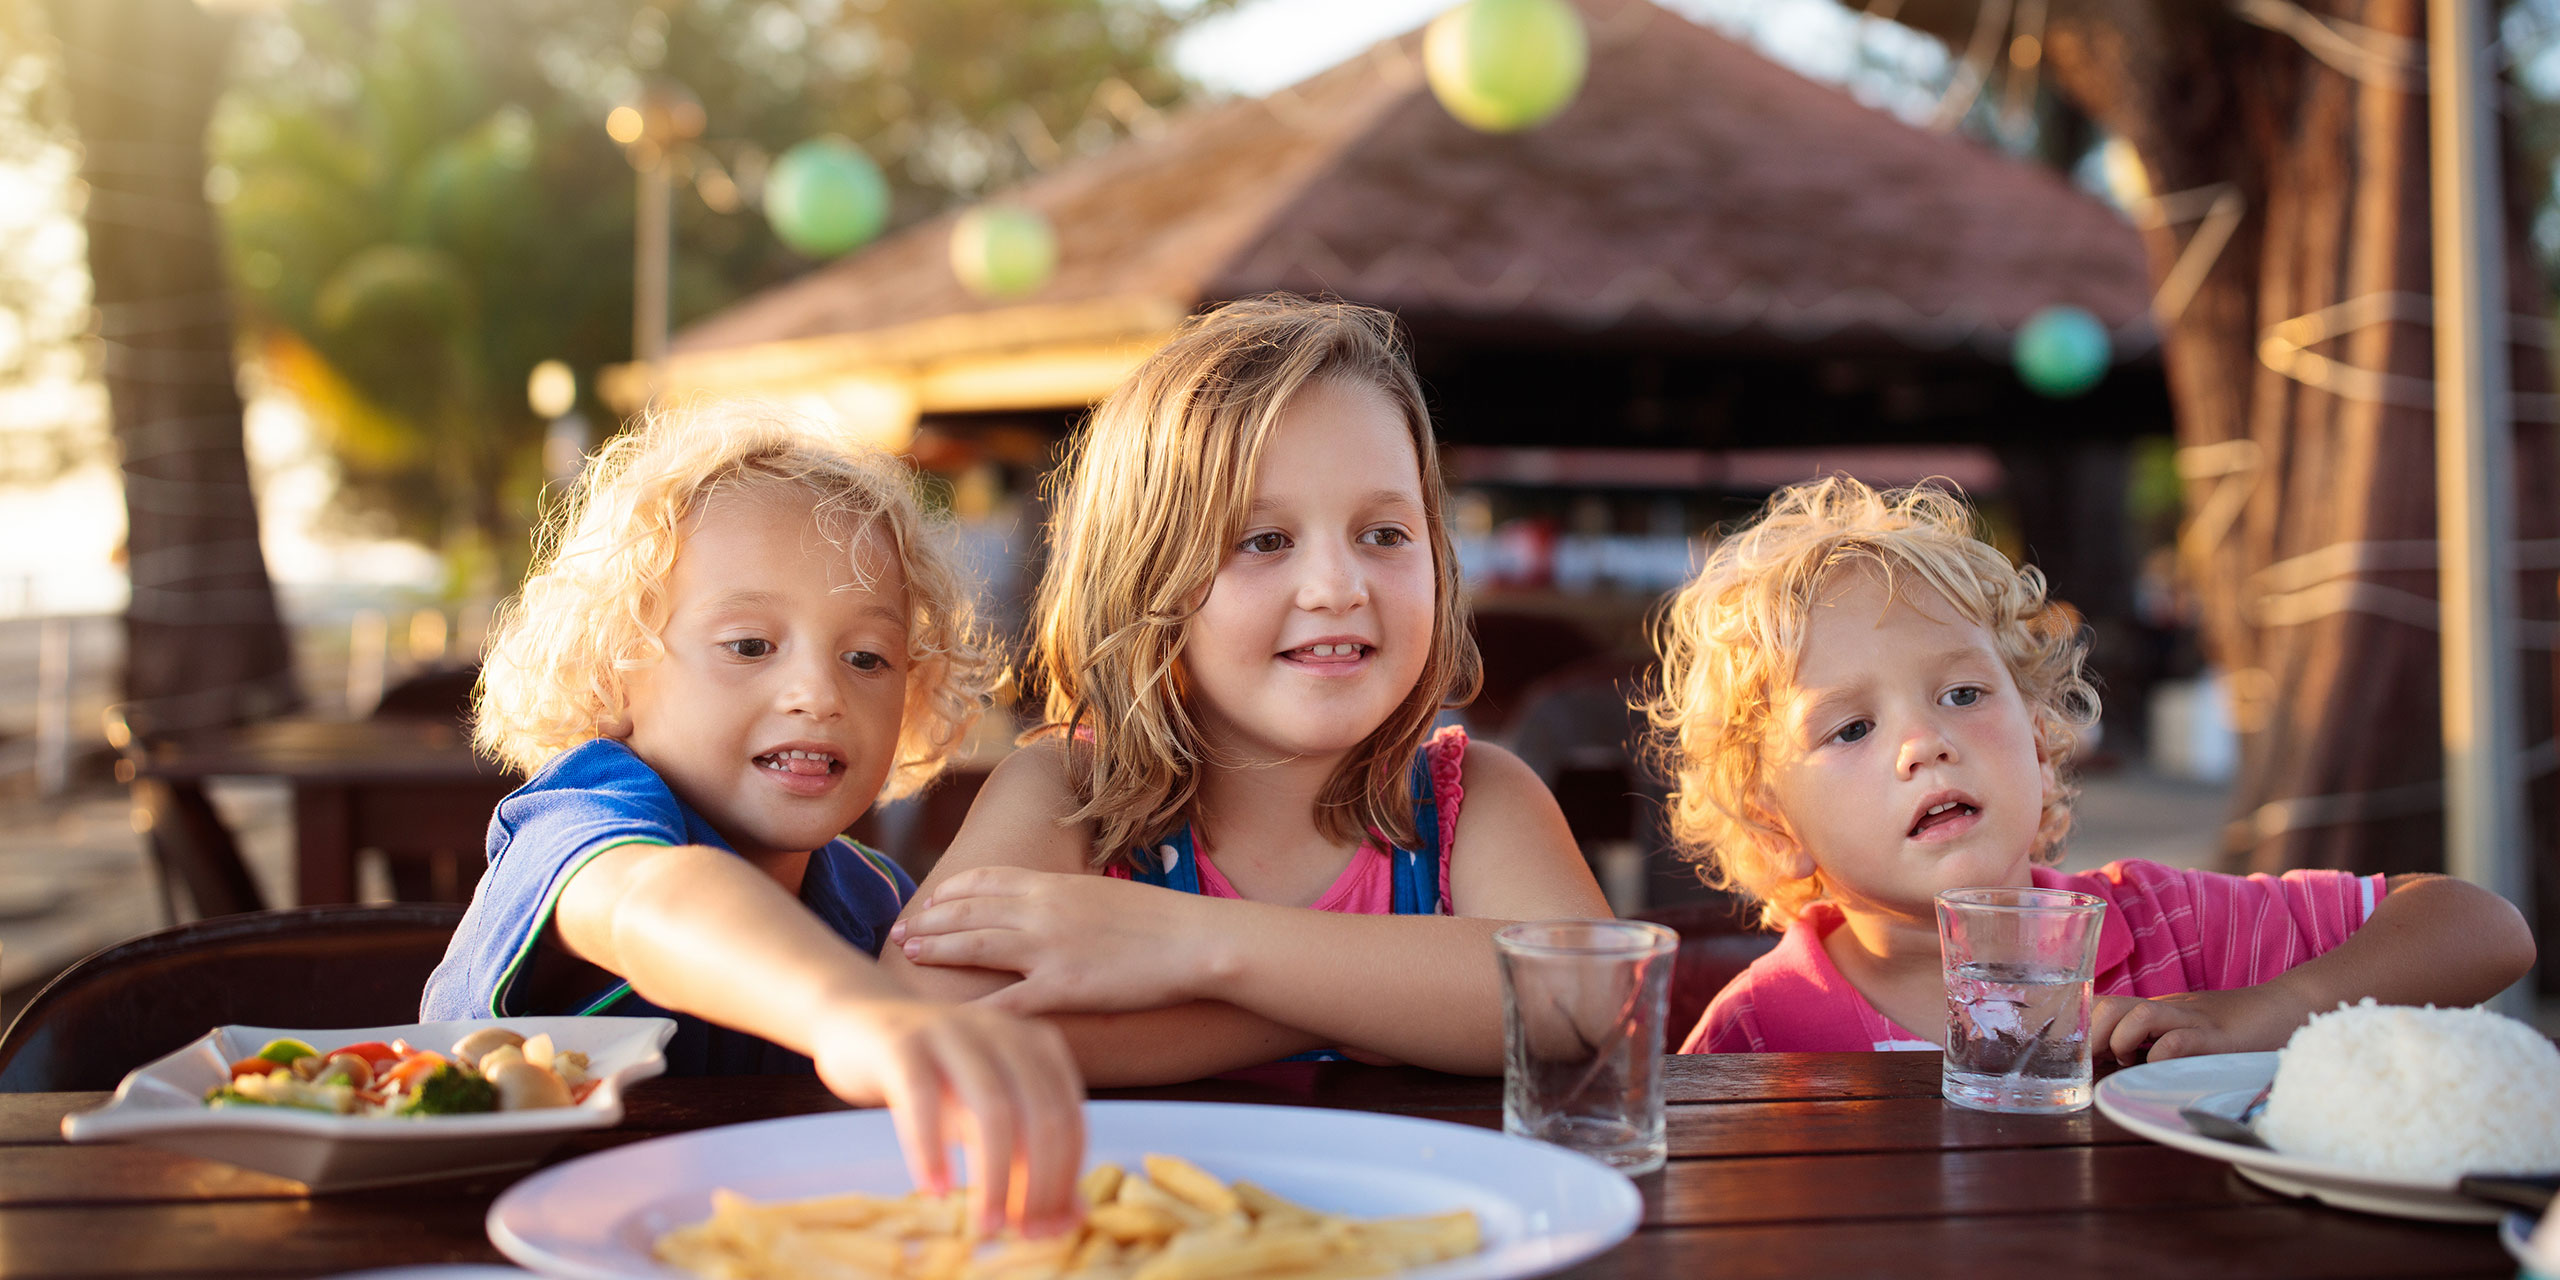 Kids Eating at Resort; Courtesy of FamVeld/Shutterstock.com